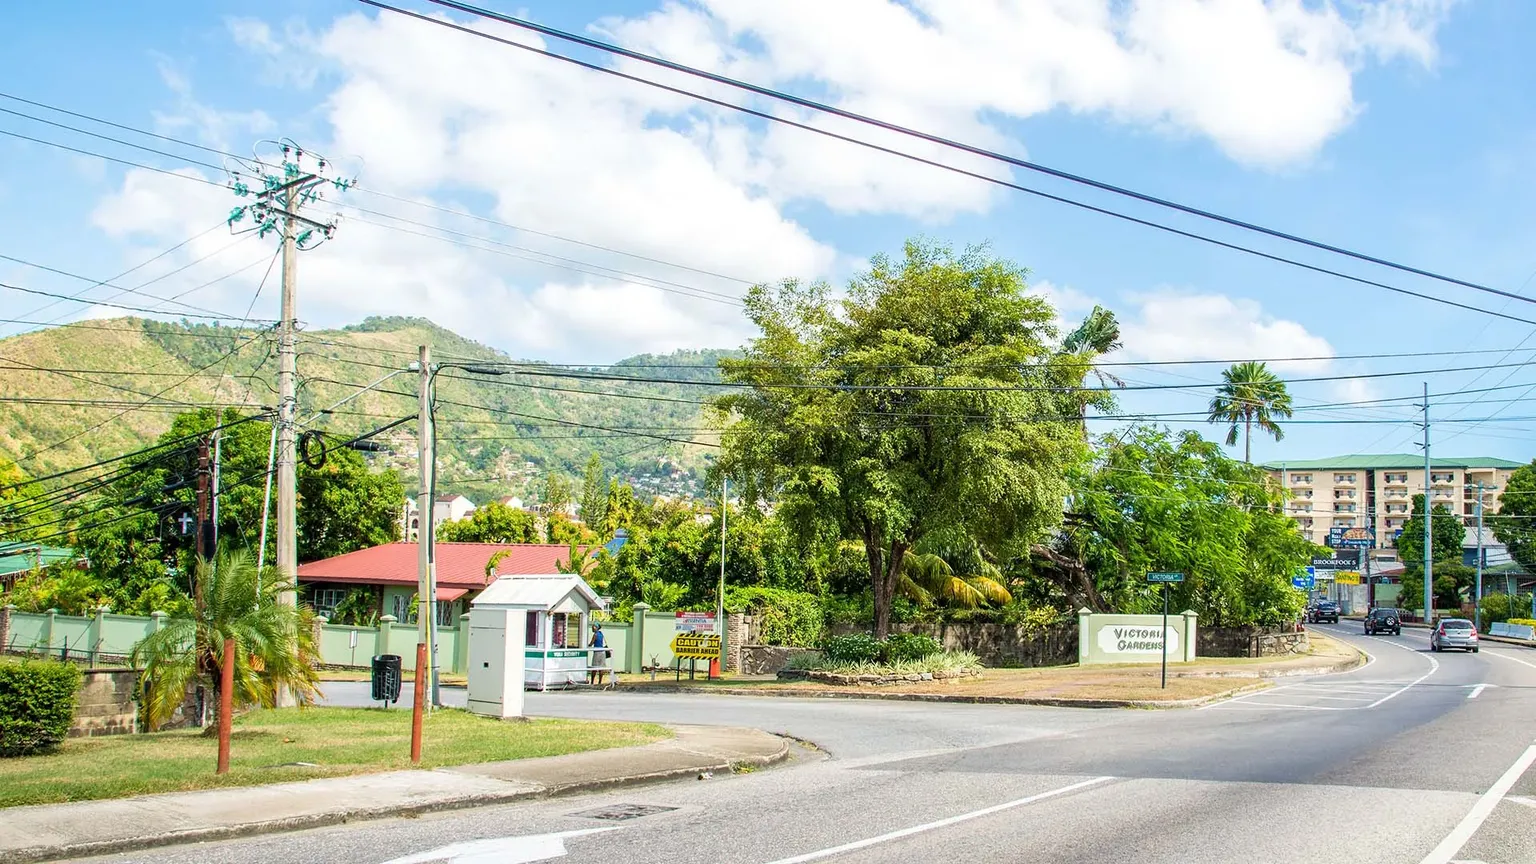 Diego Martin Region | Trinidad and Tobago - Rated 0.5